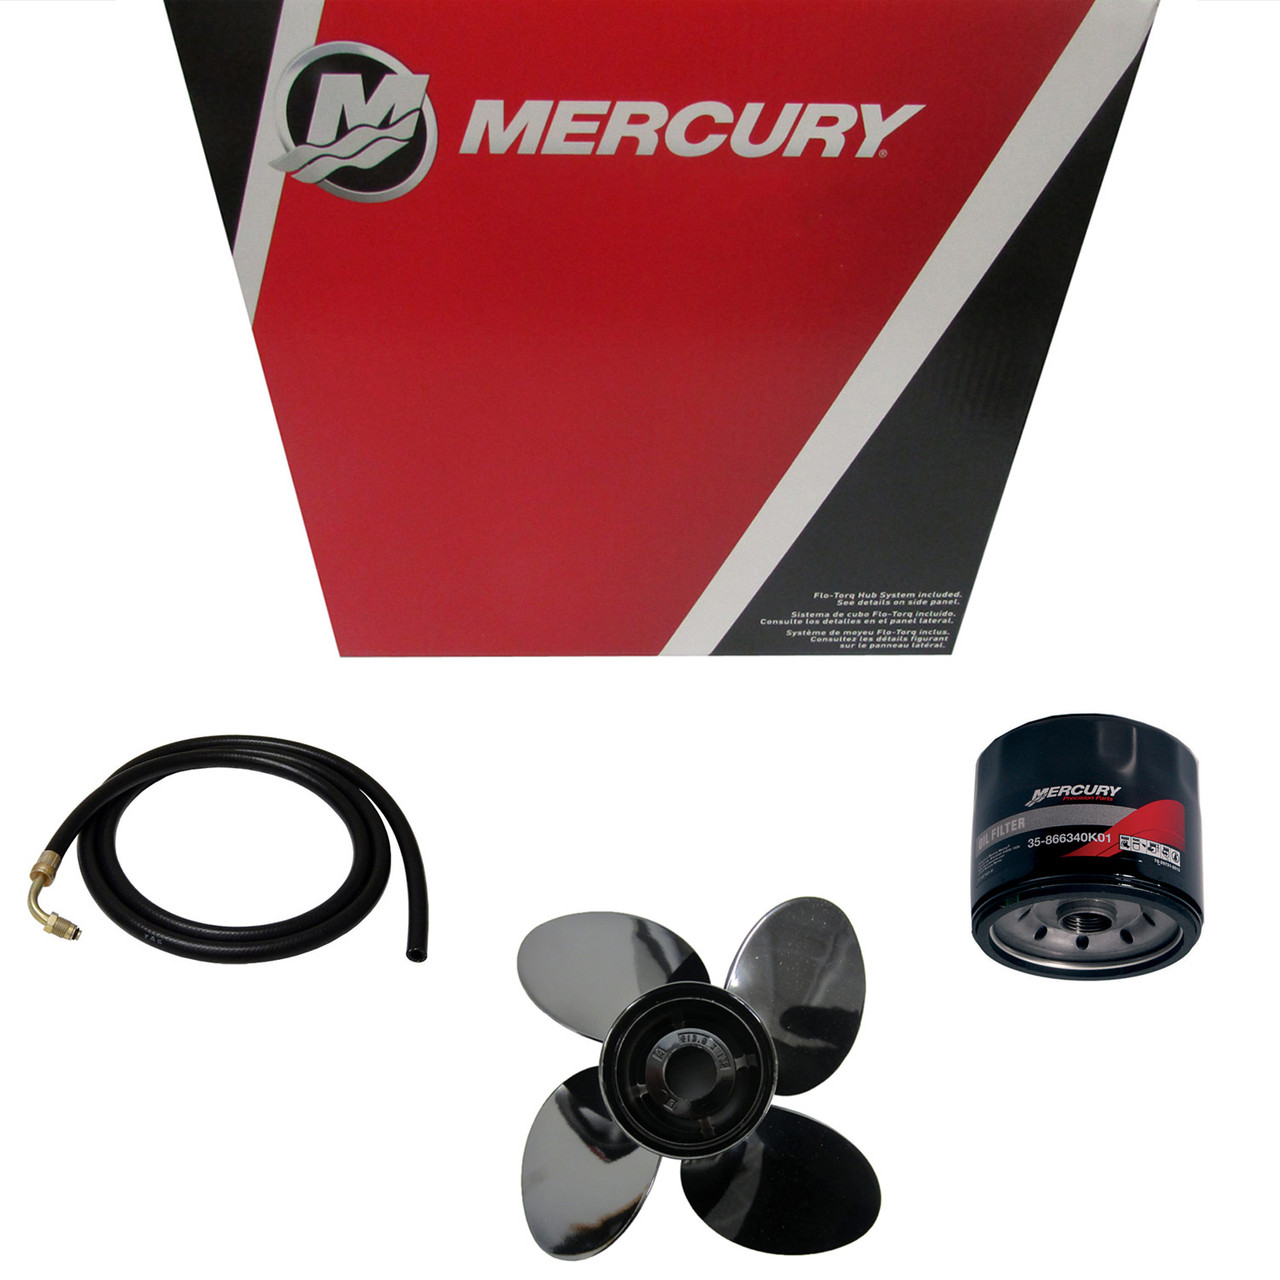 Mercury Marine / Mercruiser New OEM Nla, 32-8M0044846